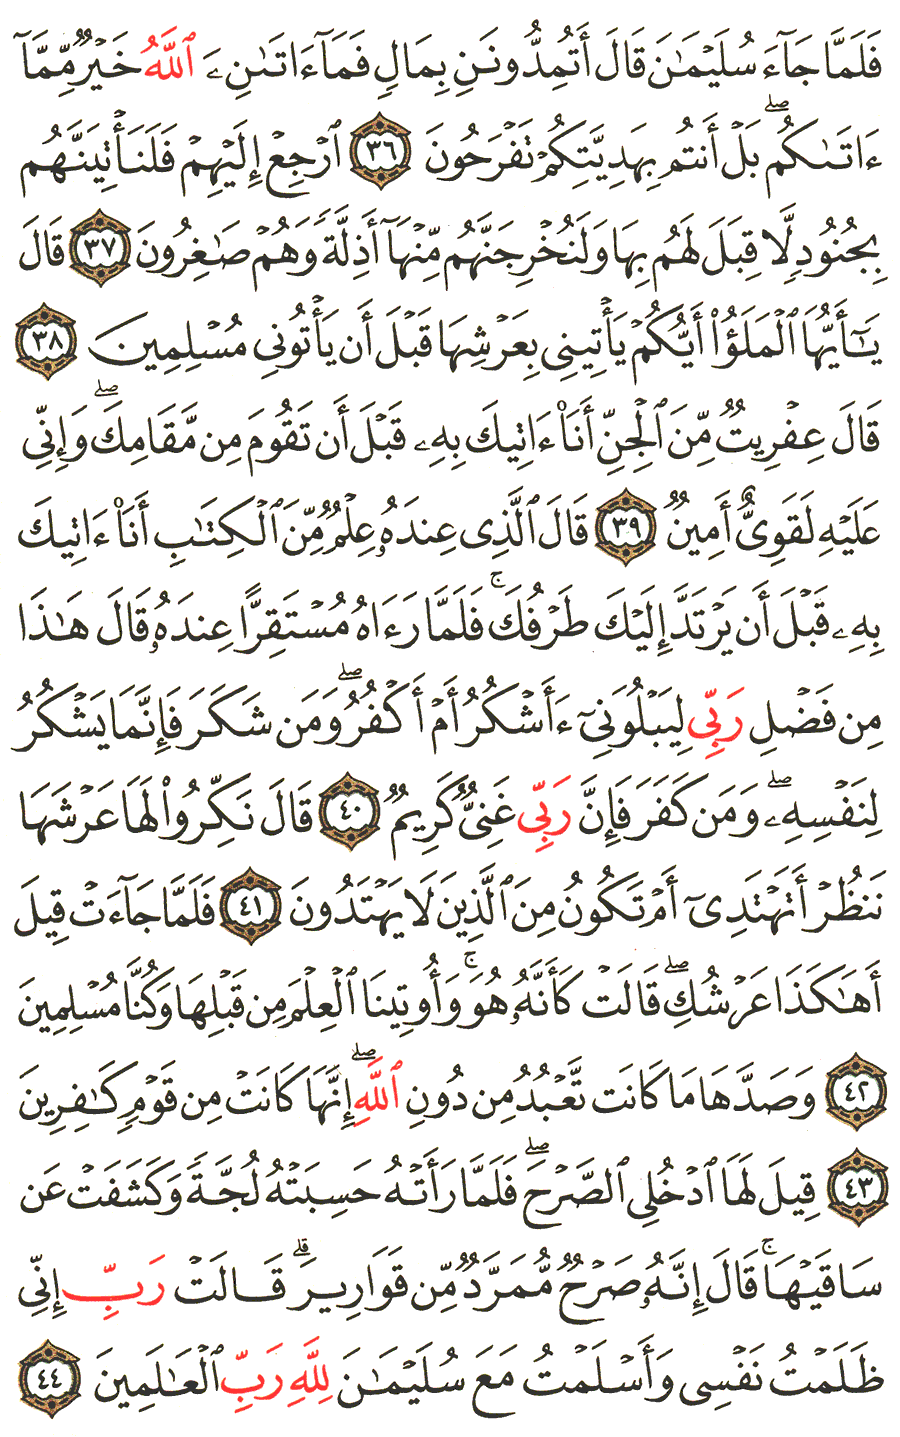 الصفحة 380 من القرآن الكريم